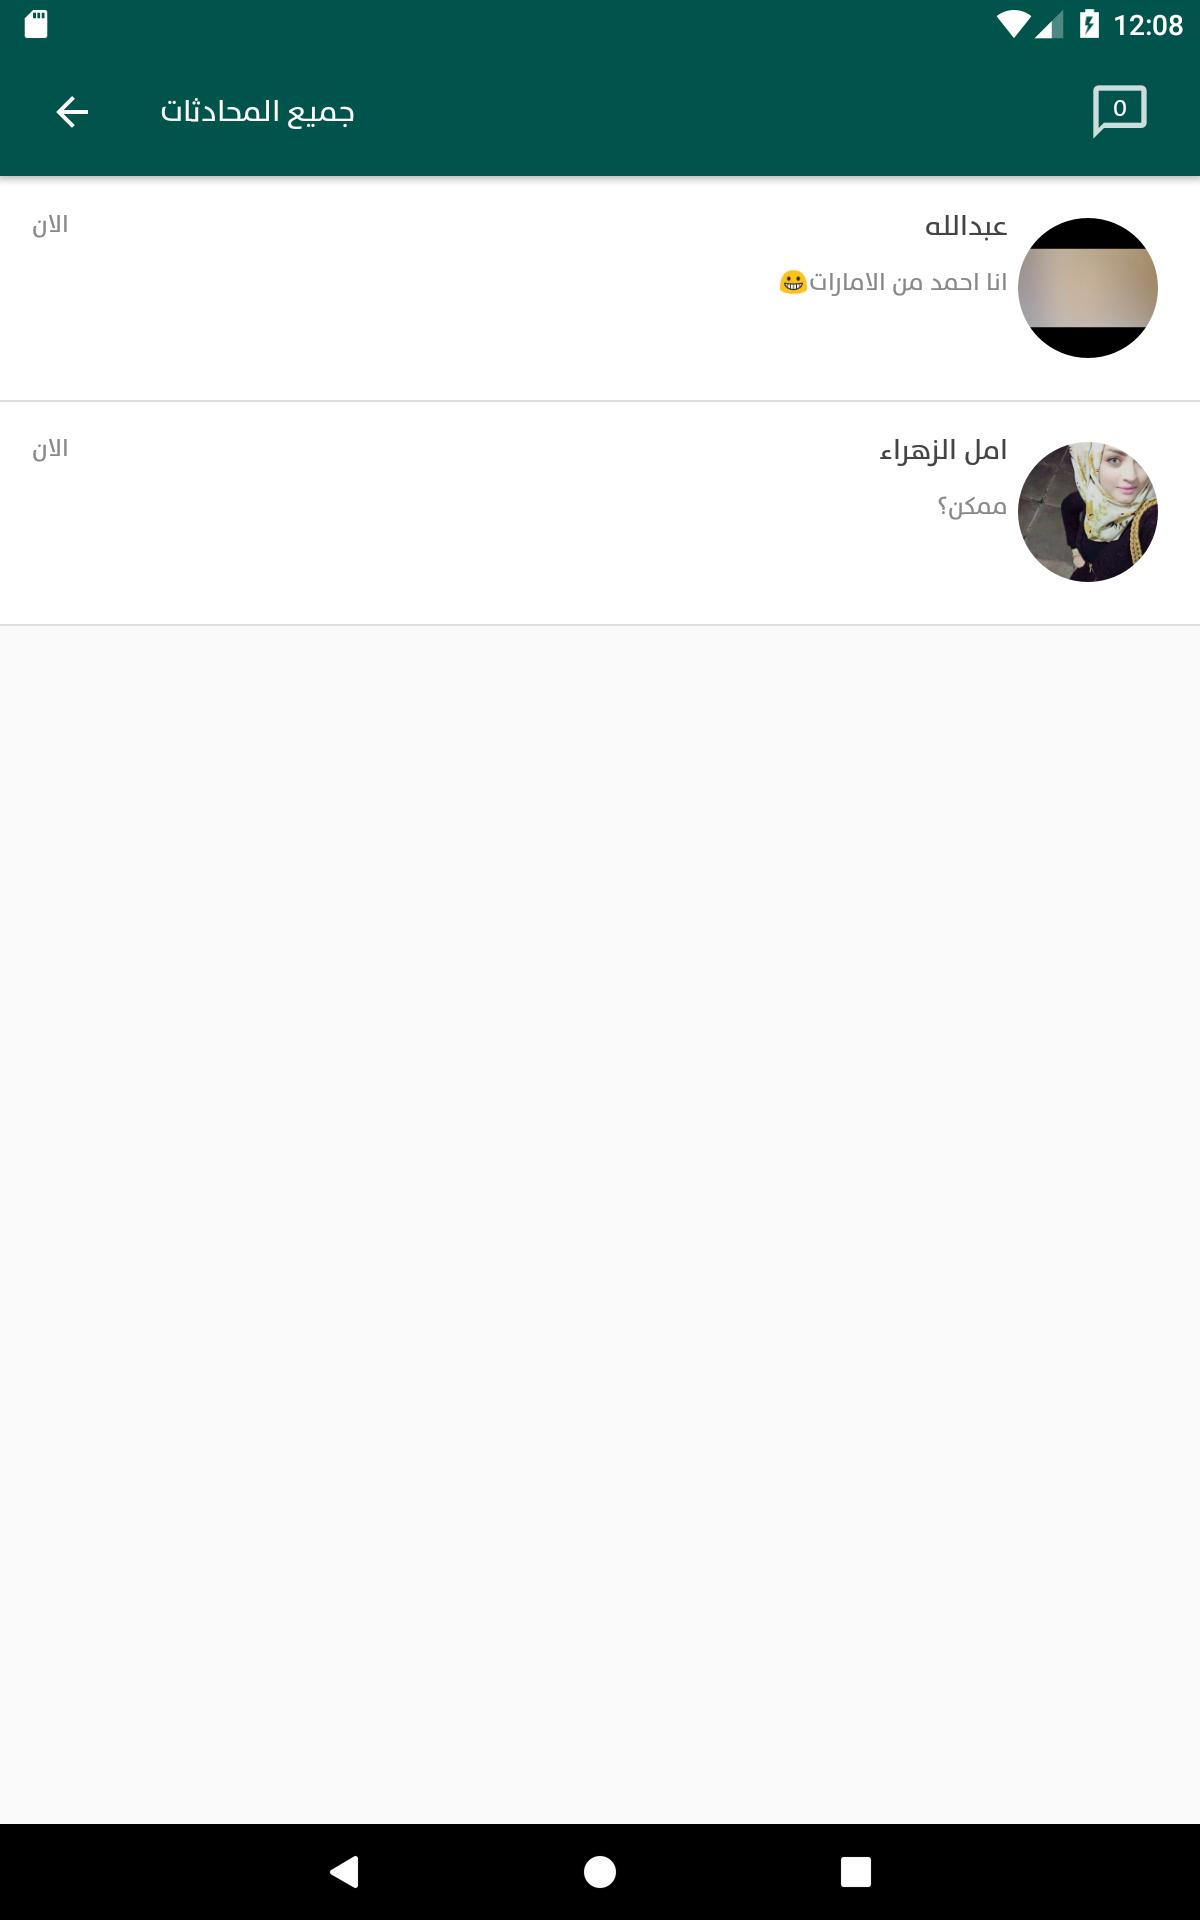 ملتقى الزواج وتعارف العرب 1.96 Screenshot 12